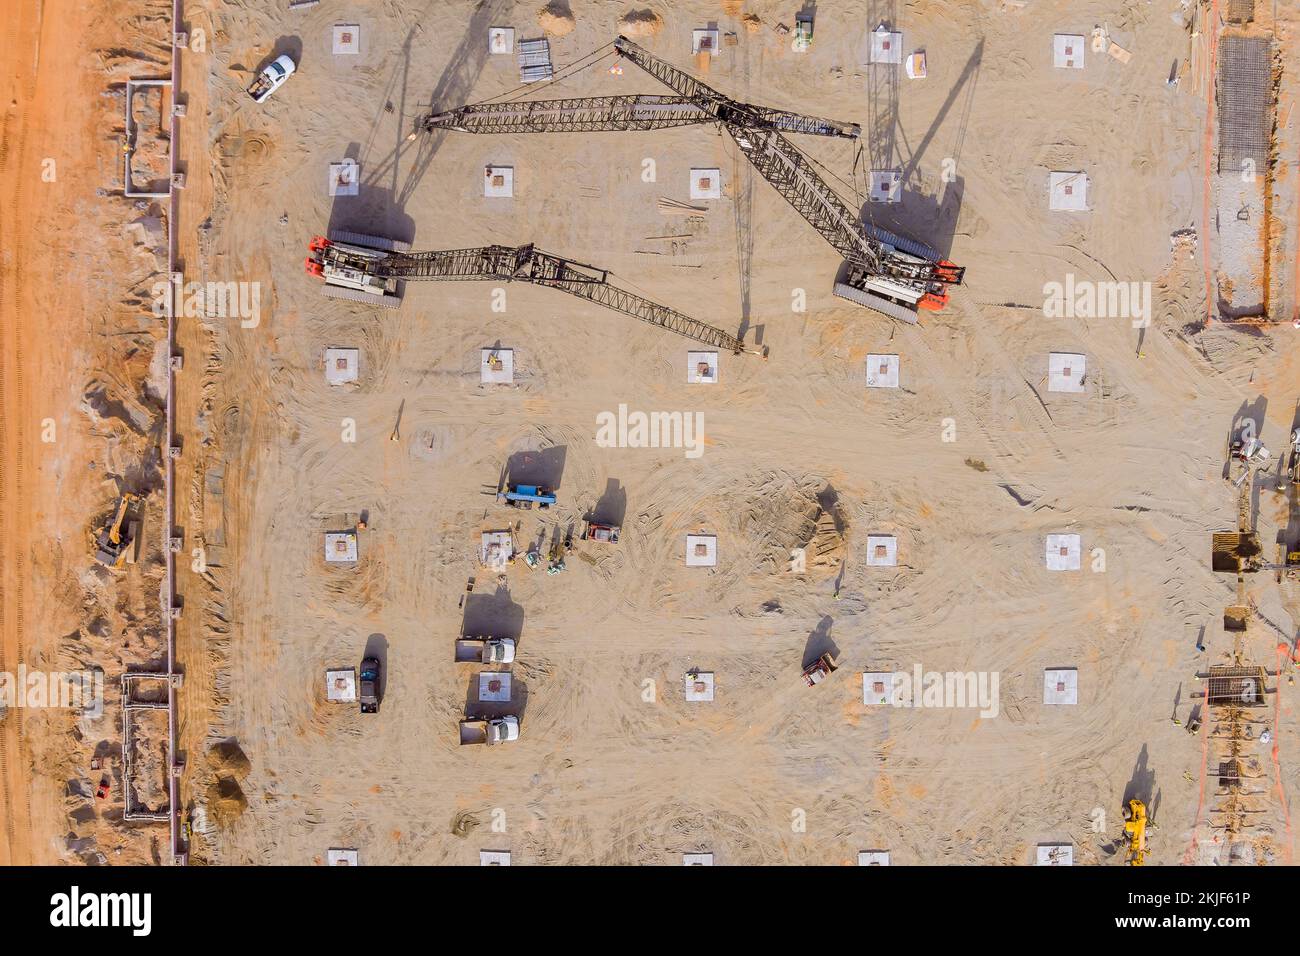 Pendant le processus de construction, beaucoup d'équipement lourd est utilisé sur le chantier de construction Banque D'Images